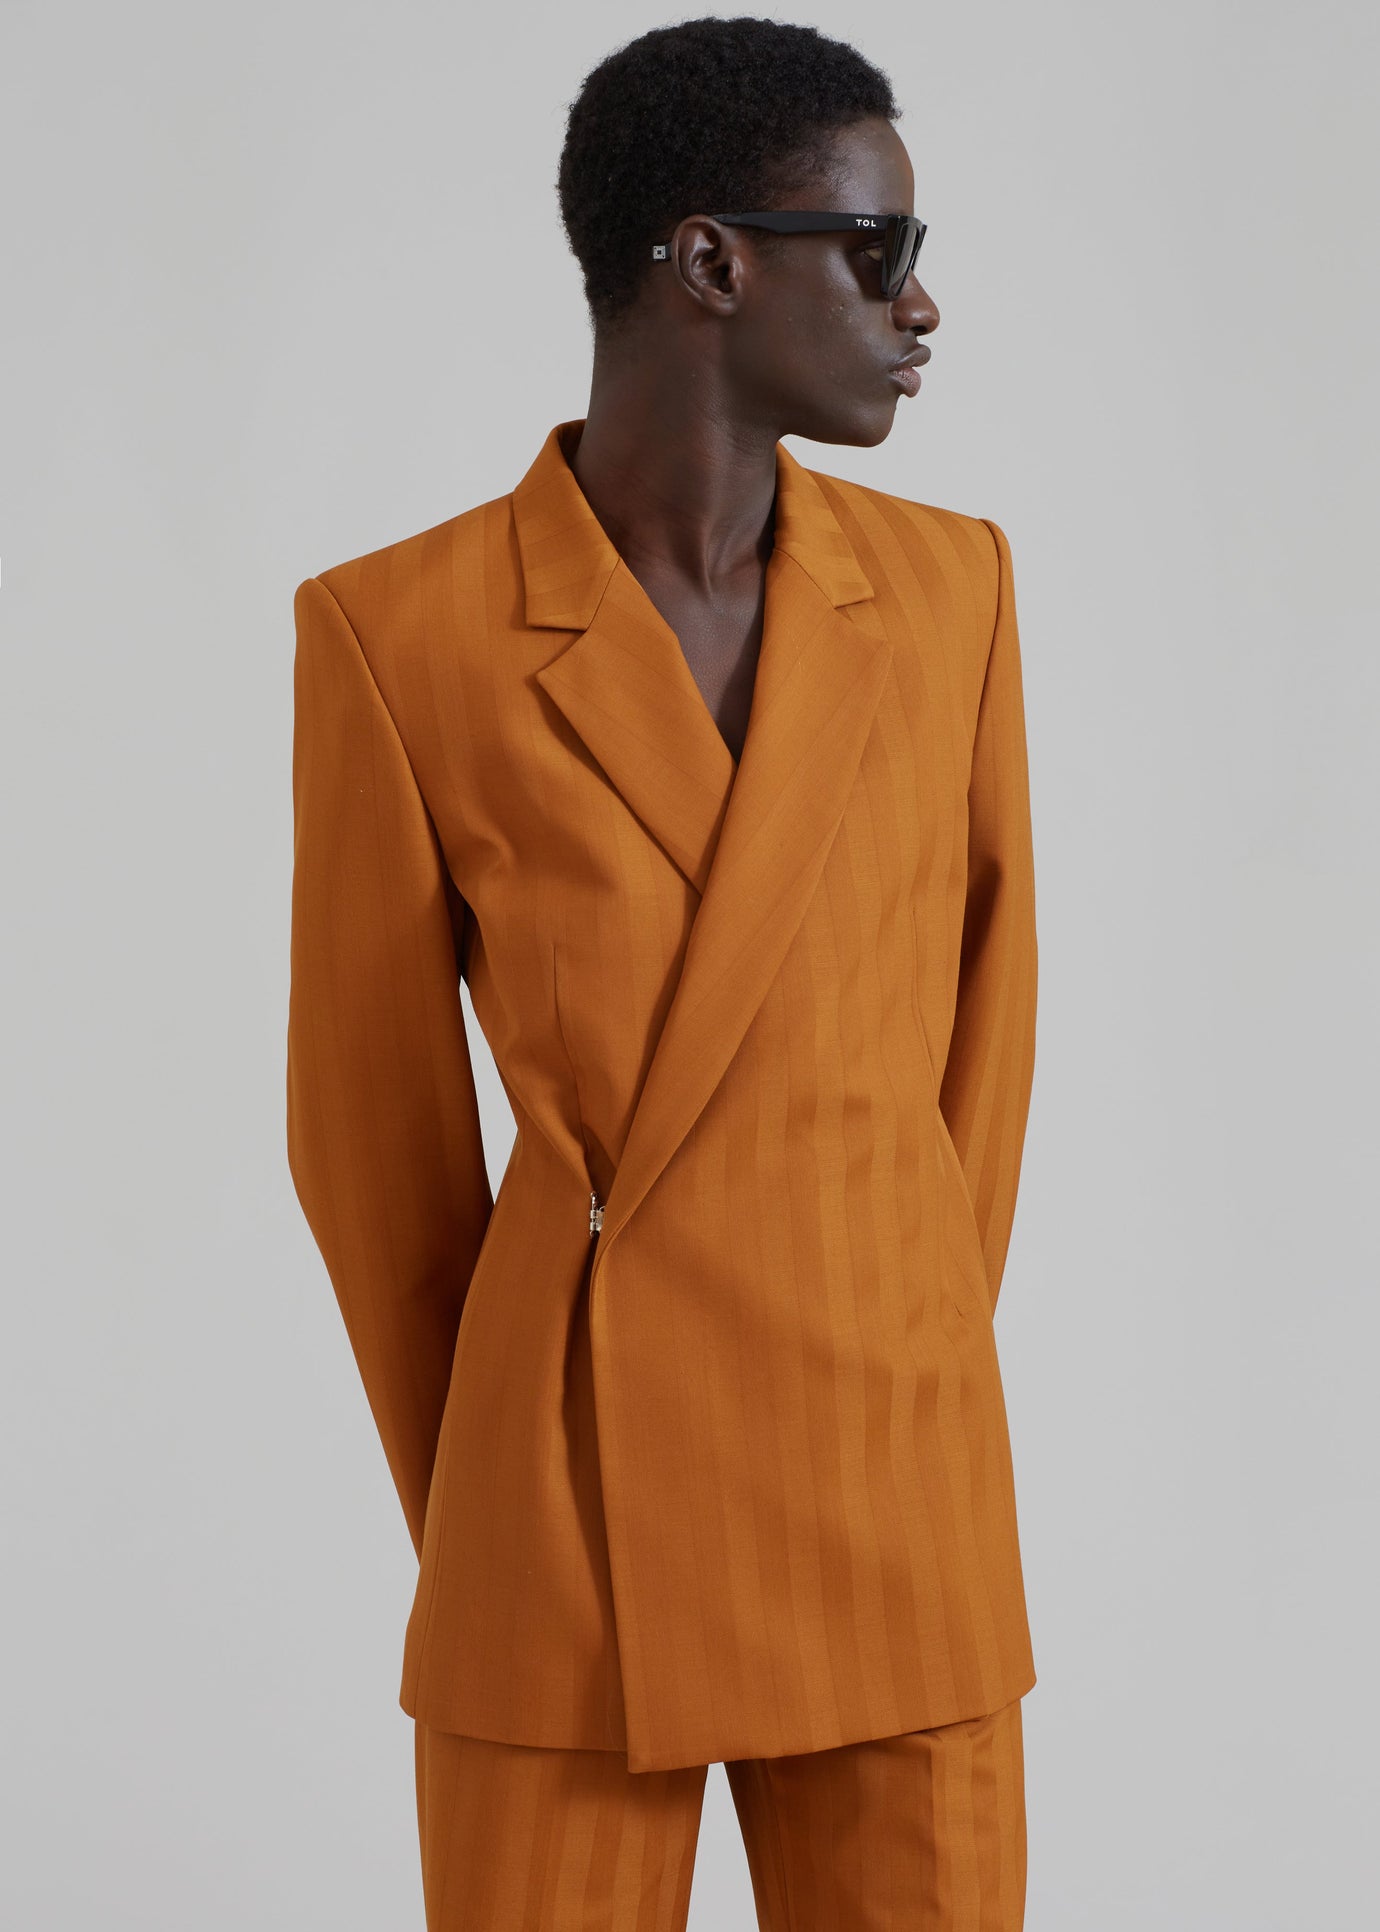 EGONLab Egonic Doubled Breasted Jacket - Orange Stripes Wool